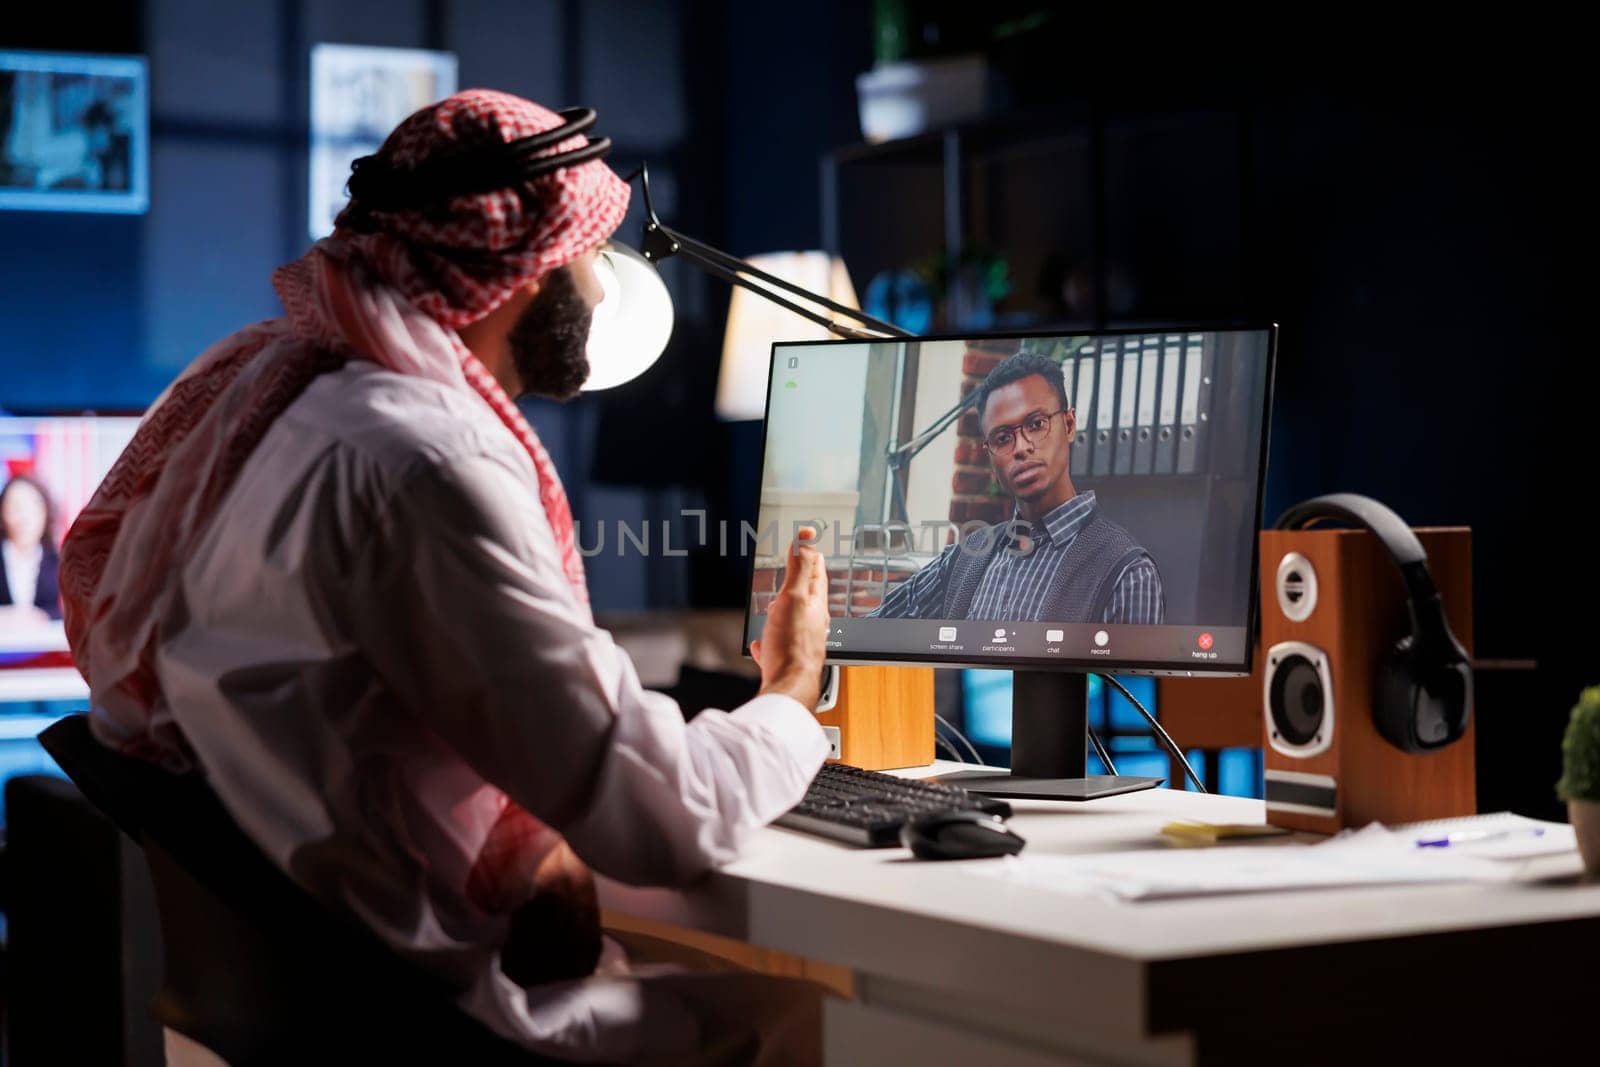 Men participate in video conferencing by DCStudio